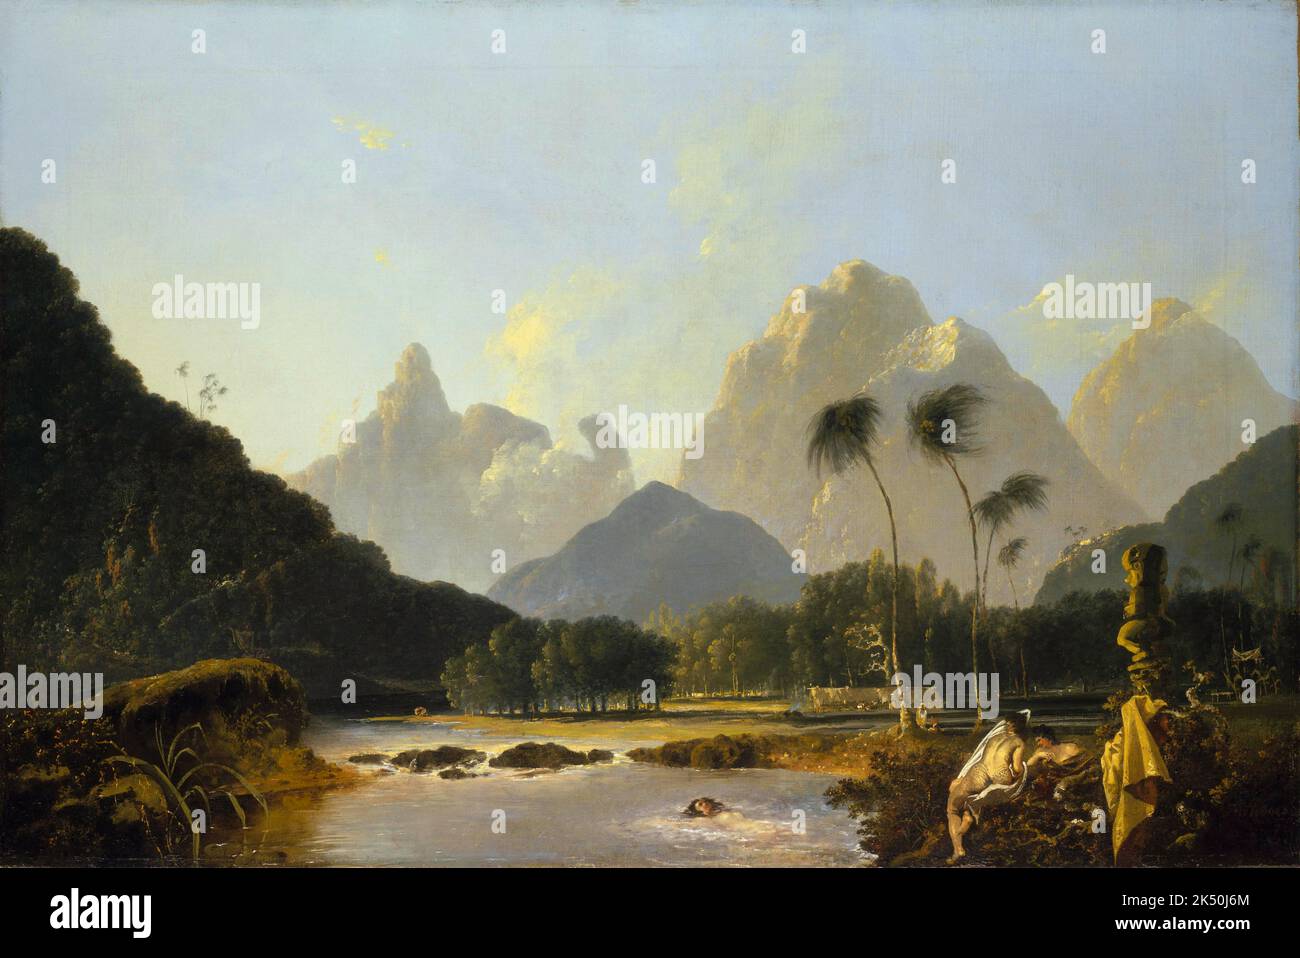 Tahiti: 'Une vue prise dans la baie d'Oaite Peha, Otaheite (Tahiti revisité)'. Peinture à l'huile sur toile par William Hodges (28 octobre 1744 - 6 mars 1797), c. 1776. William Hodges était un peintre anglais. Il a été membre du deuxième voyage de James Cook dans l'océan Pacifique, et est surtout connu pour les croquis et les peintures des lieux qu'il a visités au cours de ce voyage, y compris la Baie de Table, Tahiti, l'île de Pâques et l'Antarctique. Hodges accompagne Cook dans le Pacifique comme artiste de l'expédition en 1772-1775. Beaucoup de ses croquis et peintures de lavage ont été adaptés comme gravures dans les journaux publiés de Cook. Banque D'Images